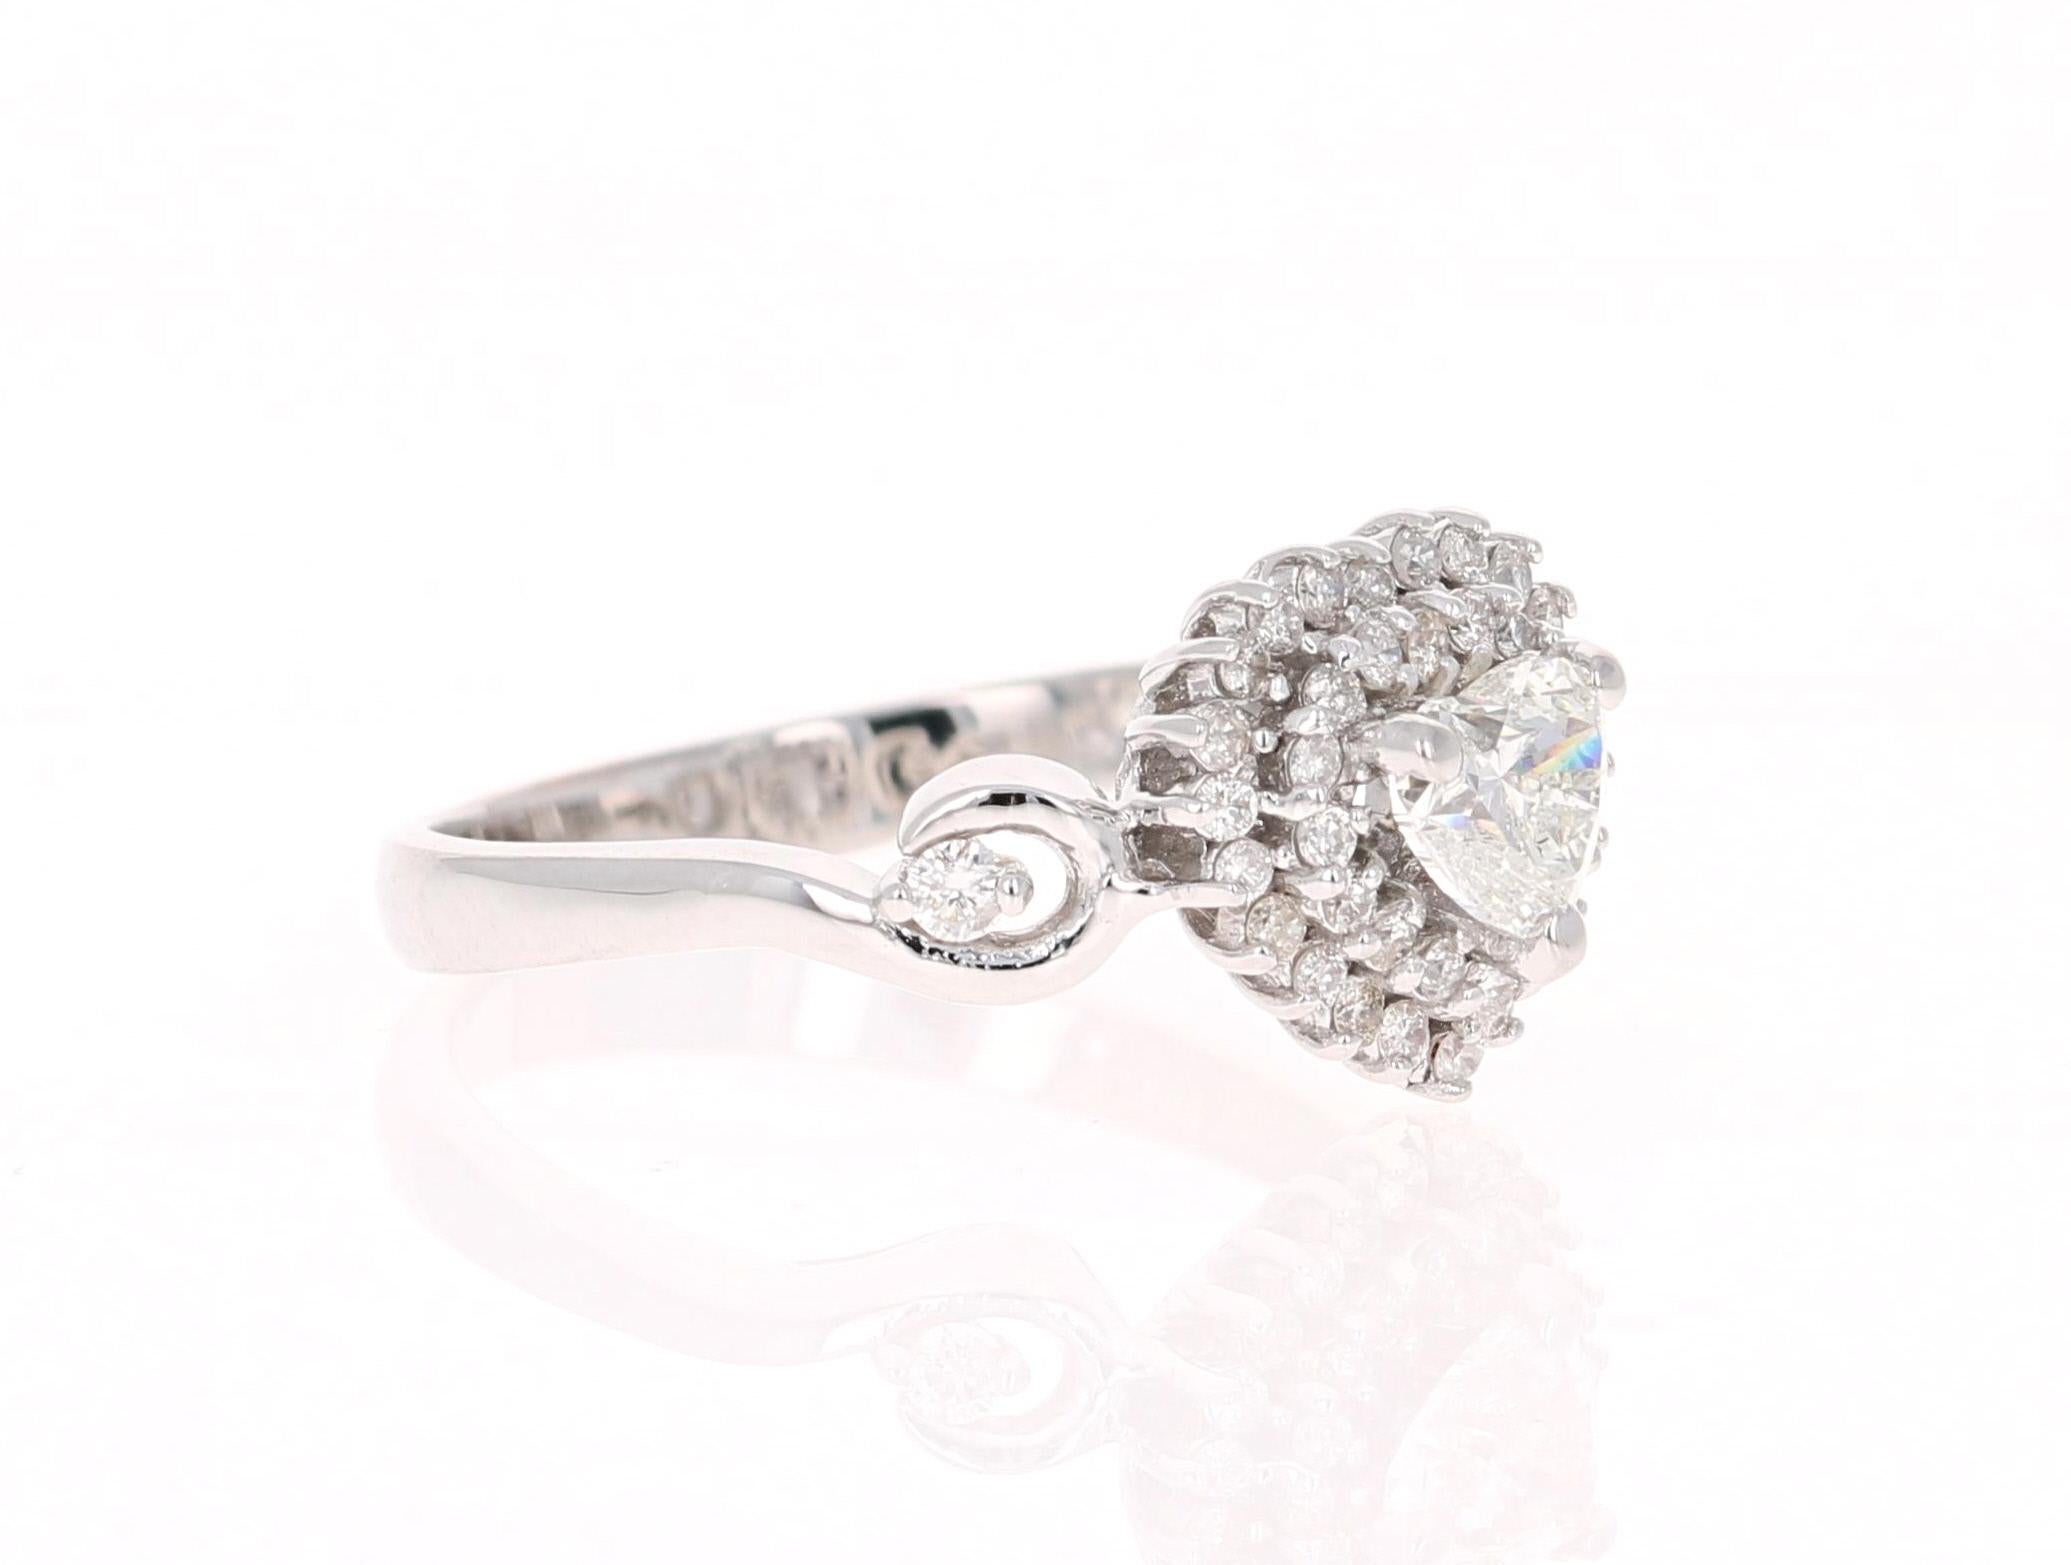 Ein schöner und einzigartiger Verlobungsring mit einem Diamanten im Herzschliff. 

Dieser einzigartige Ring hat einen Diamanten im Herzschliff mit einem Gewicht von 0,51 Karat und ist umgeben von 41 Diamanten im Rundschliff mit einem Gewicht von